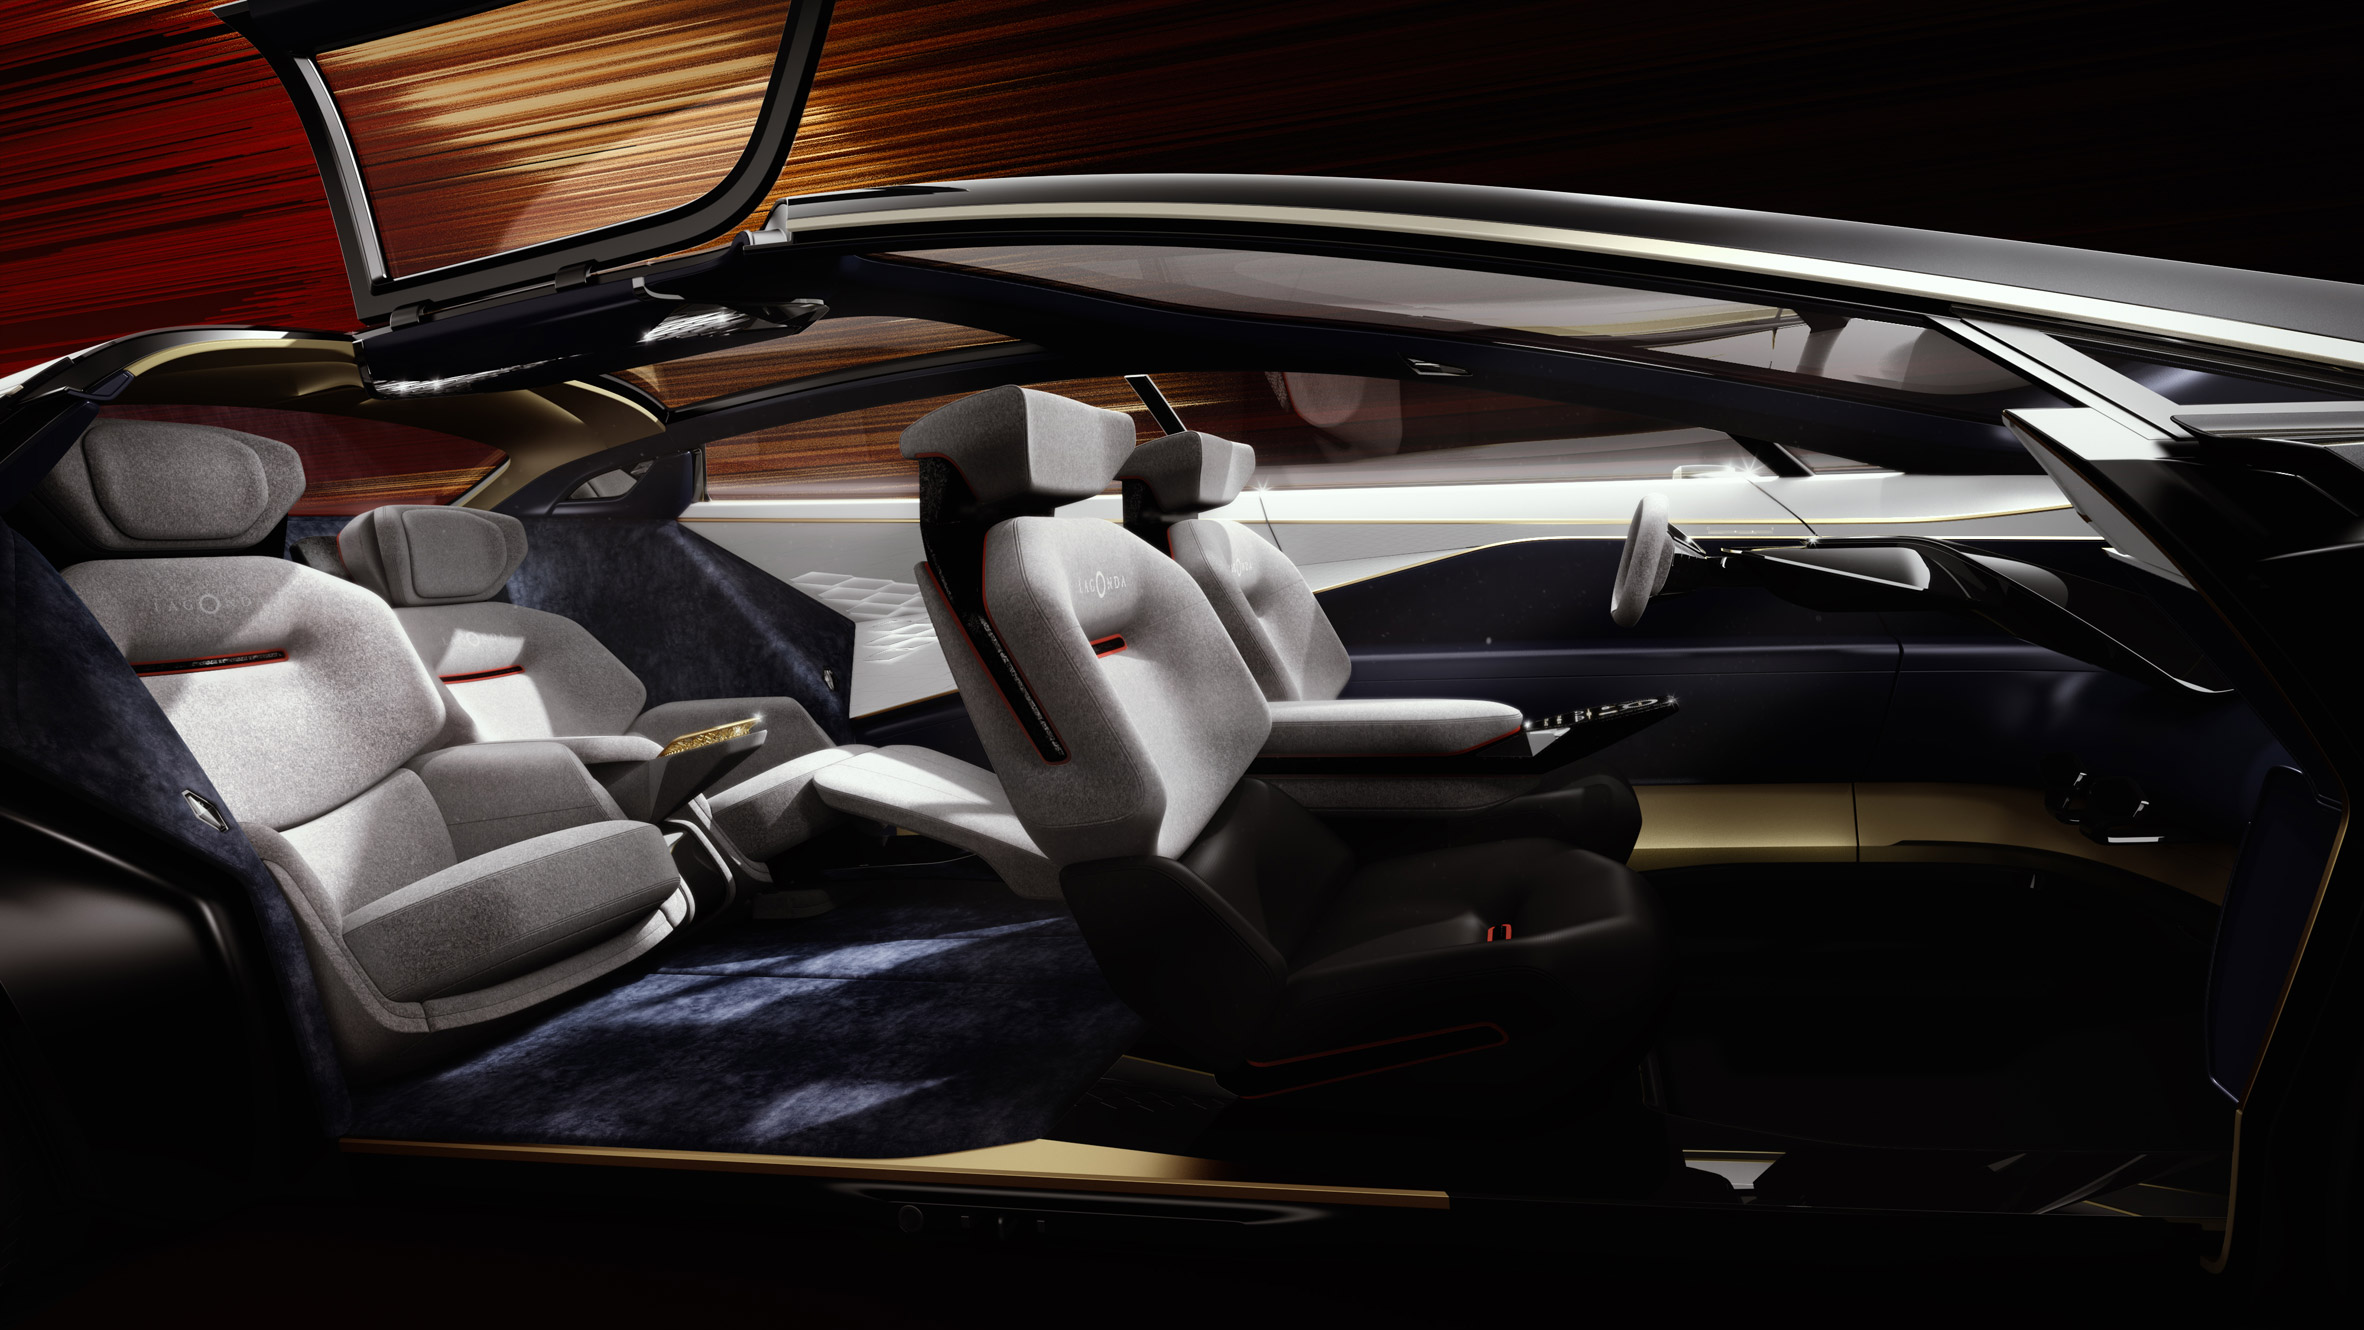 Aston martin lagonda car car hi-res stock photography and images - Alamy